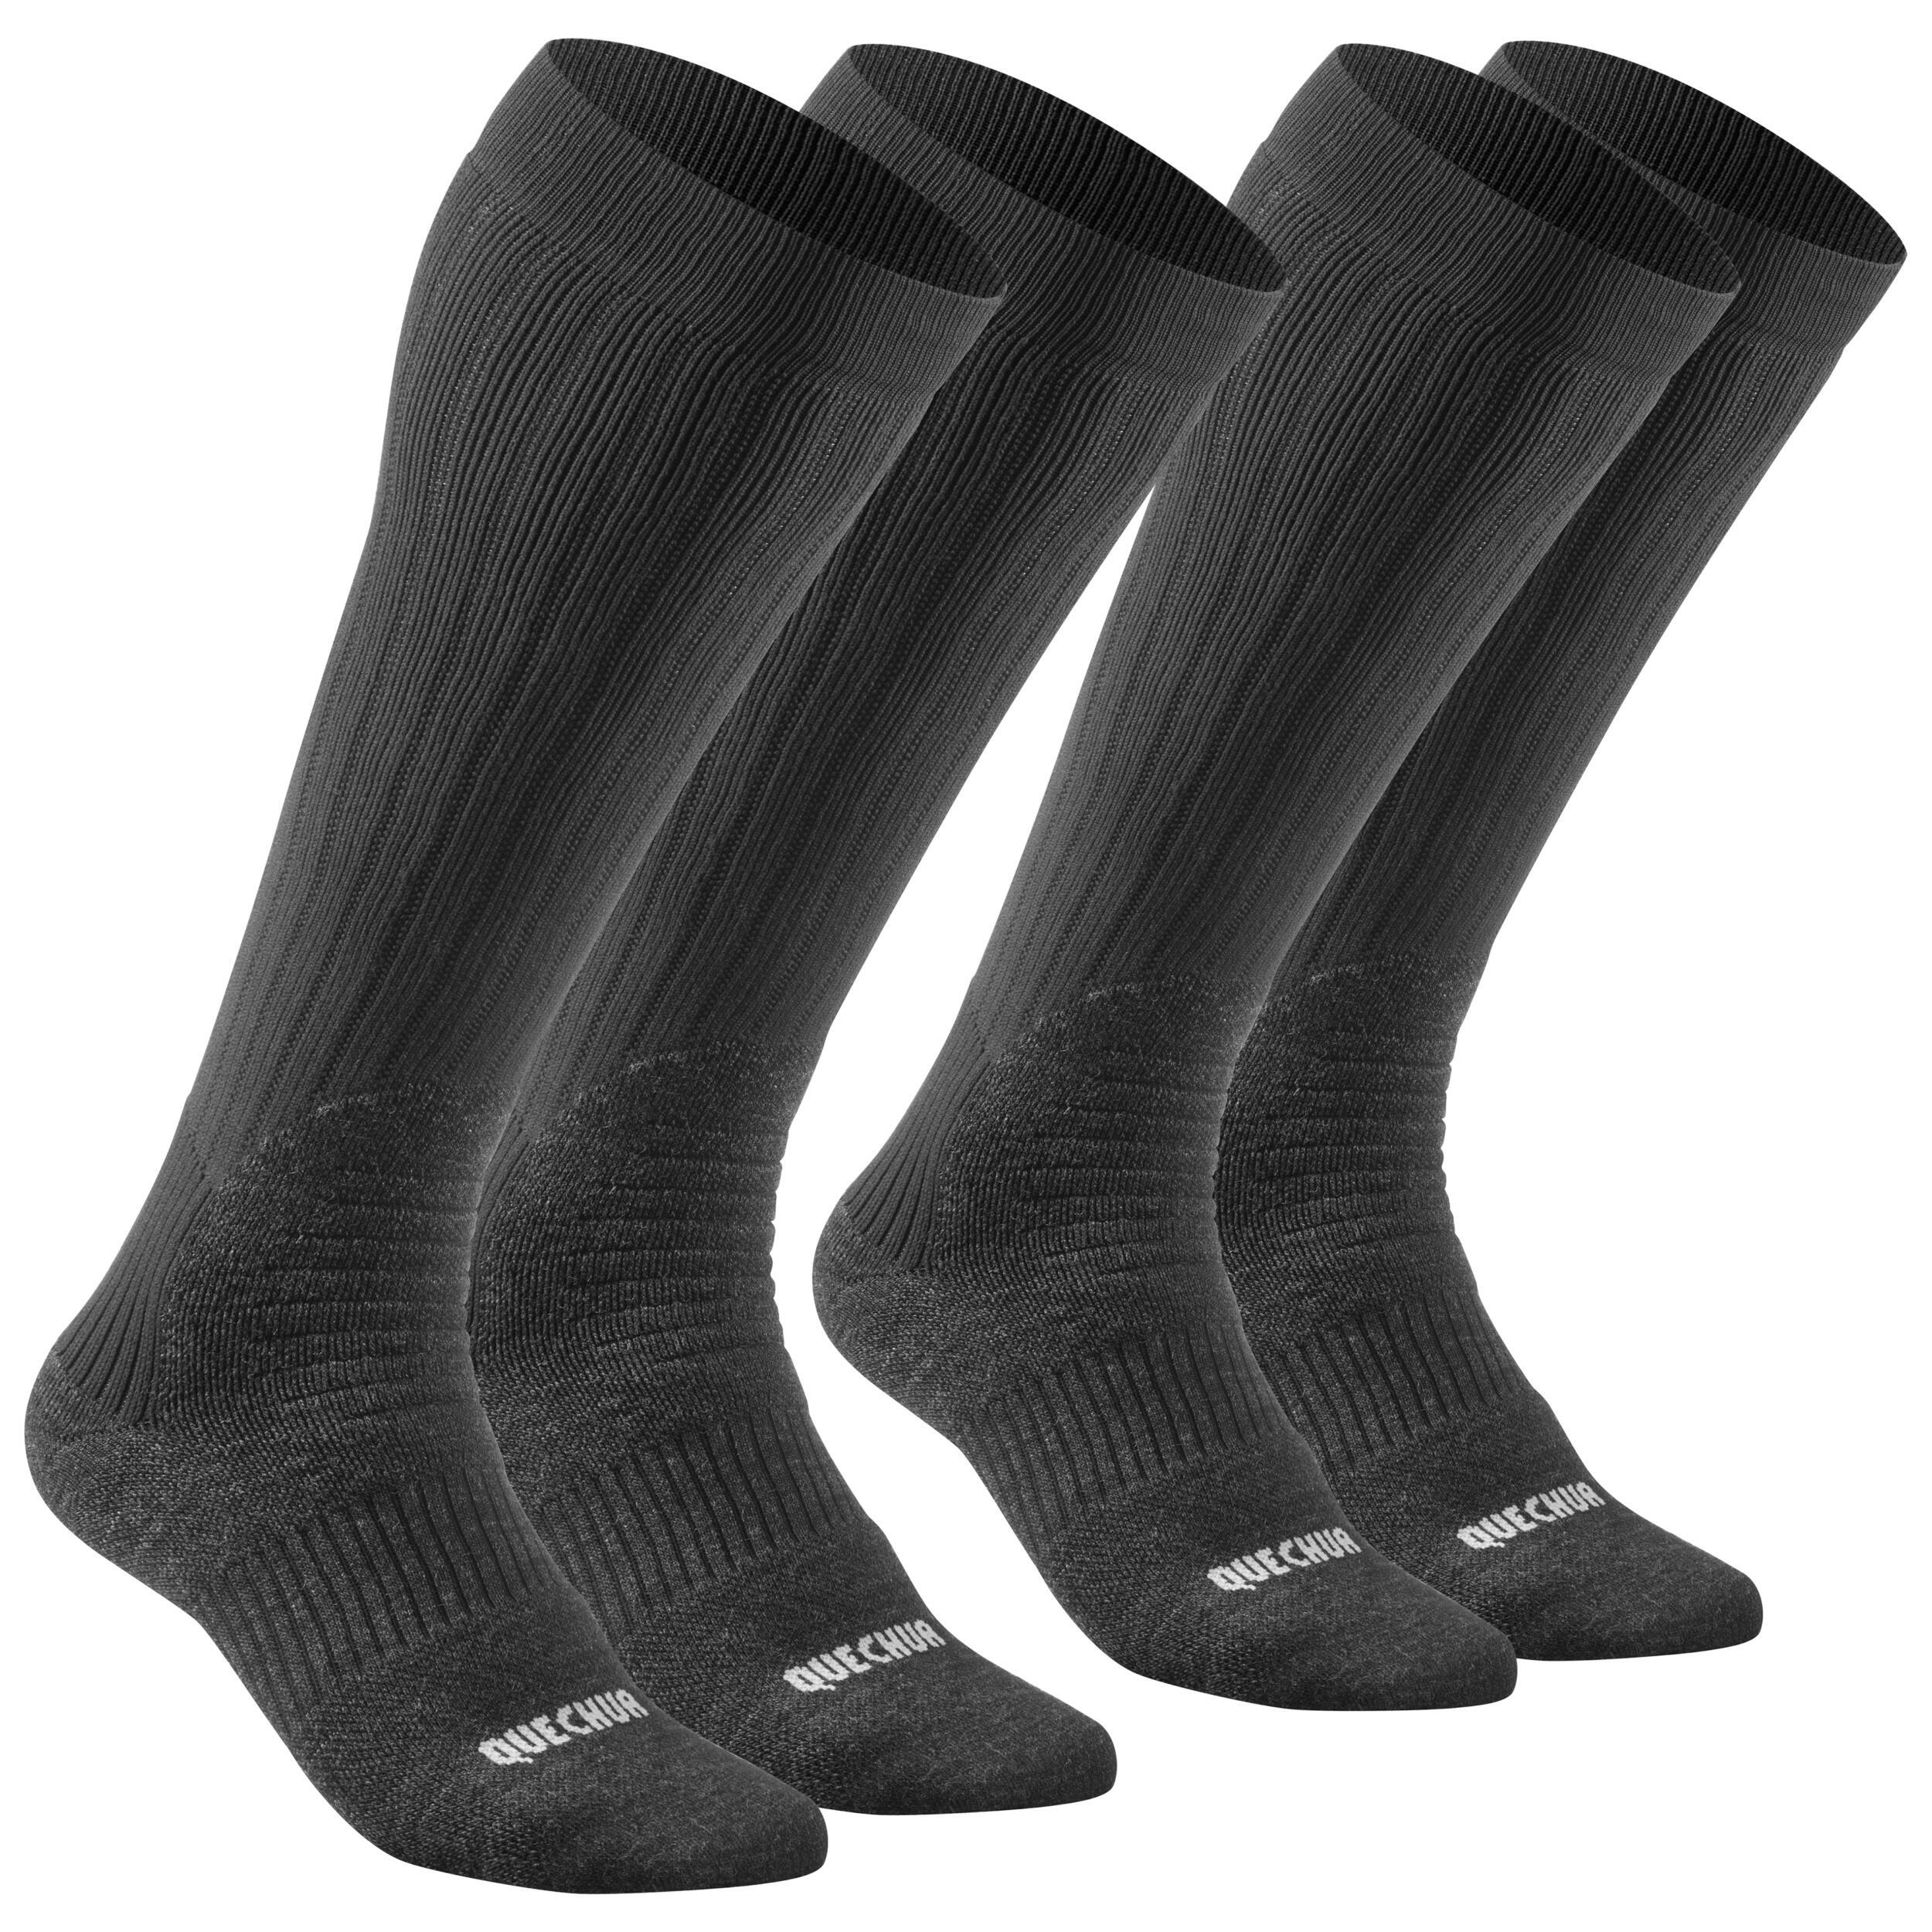 Warm Hiking Socks - SH100 X-WARM HAUTES - 2 Pairs 1/6